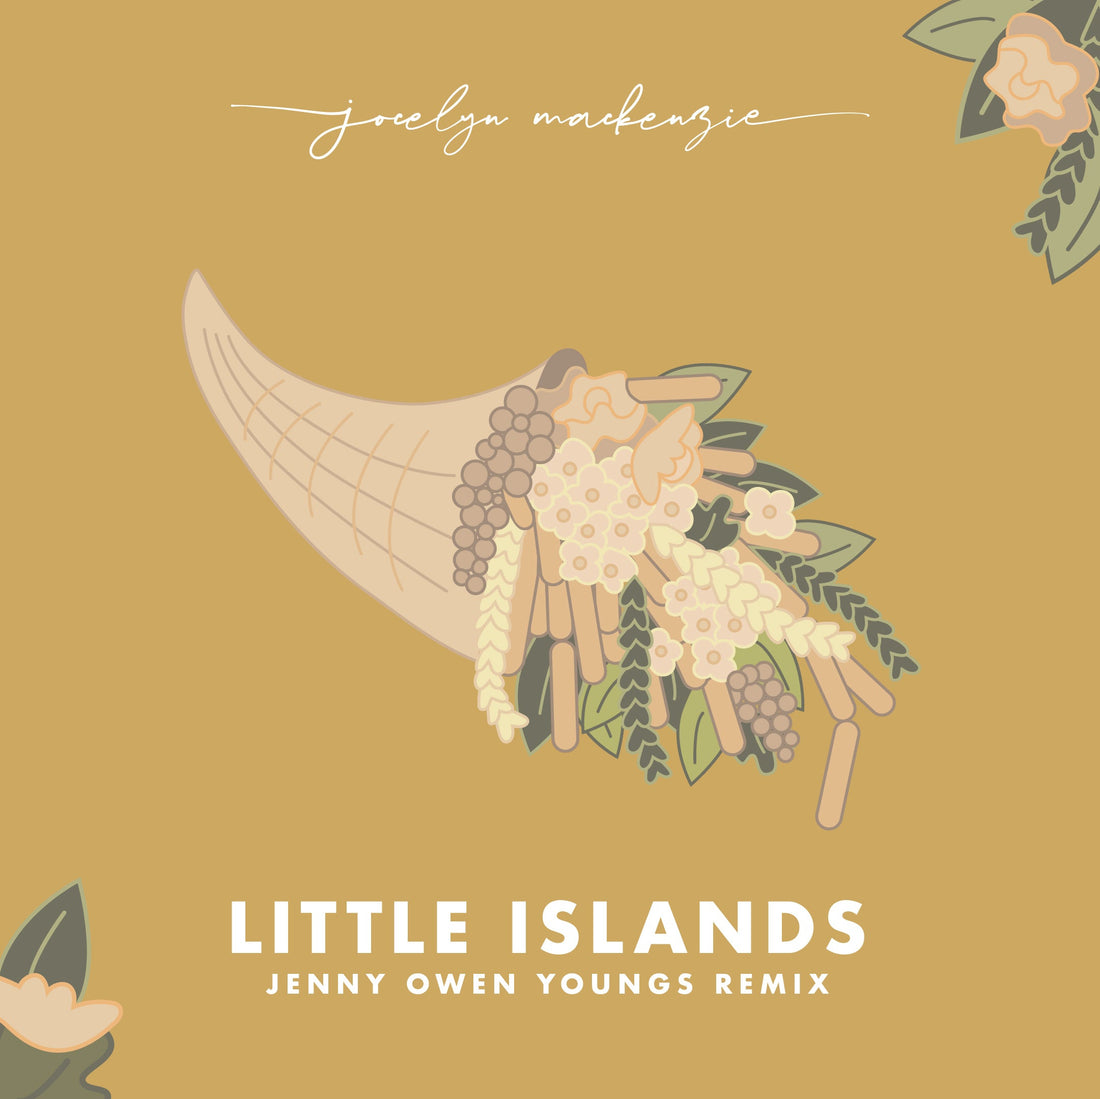 Jocelyn Mackenzie - "Little Islands (Jenny Owen Youngs Remix)" out now